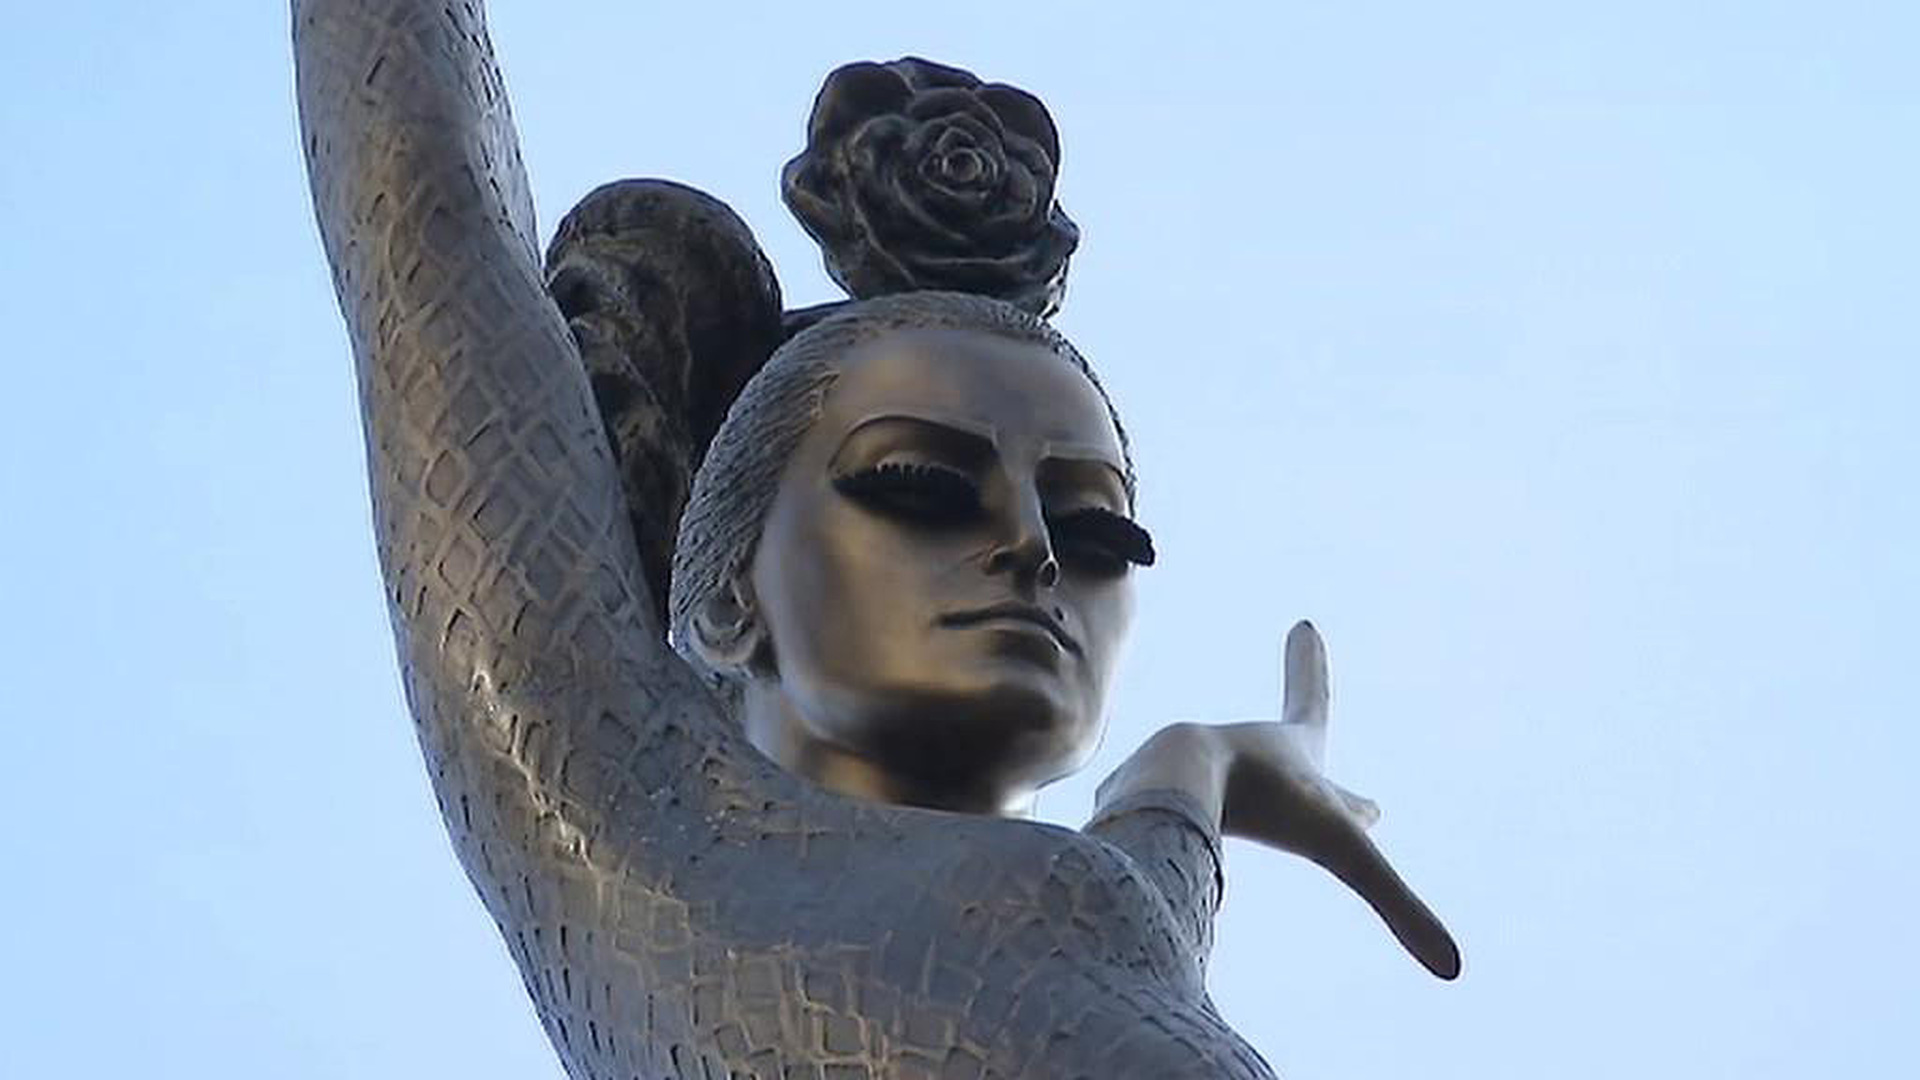 майя плисецкая памятник в москве